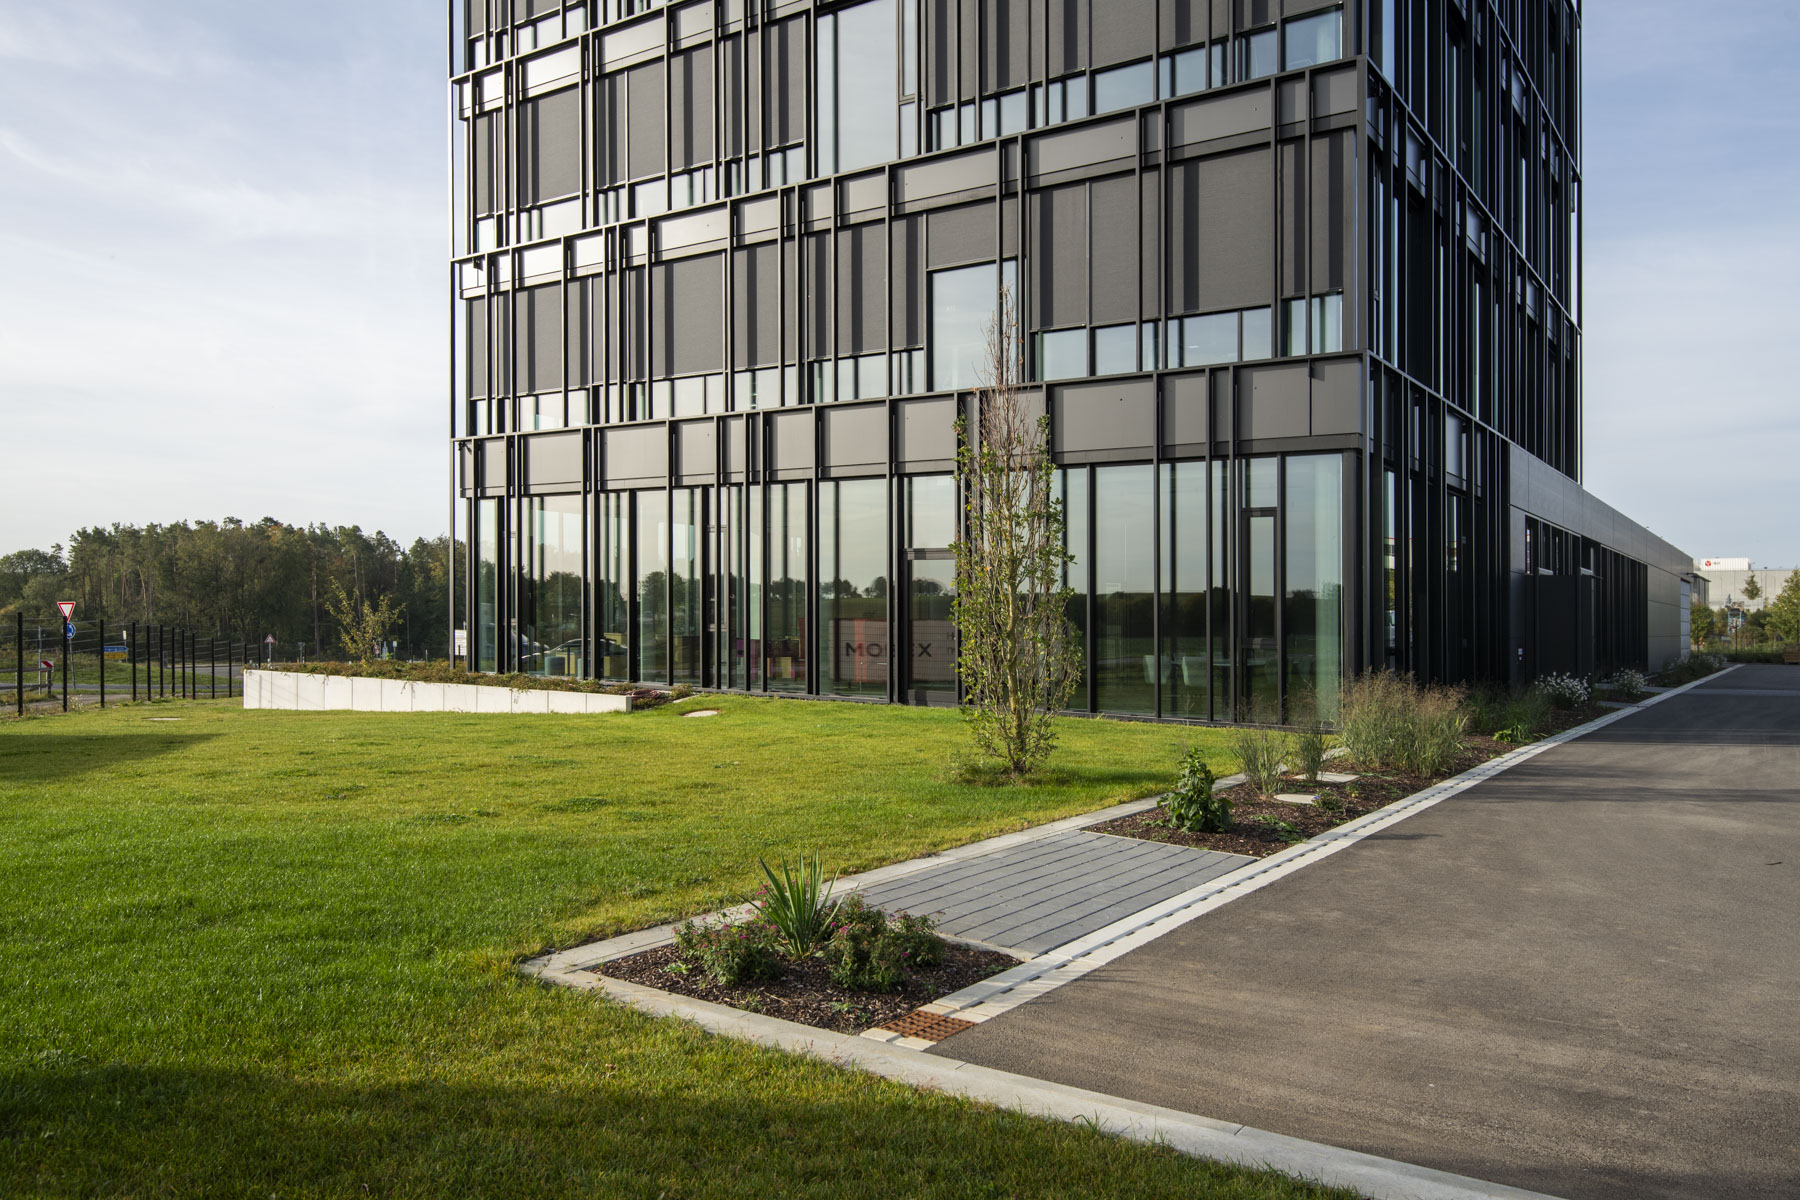 Mehrstöckiges schwarzes Firmengebäude mit großzügigen Glasflächen, davor grüner Rasen, frisch bepflanzte Grünflächen und ein asphaltierter Parkplatz